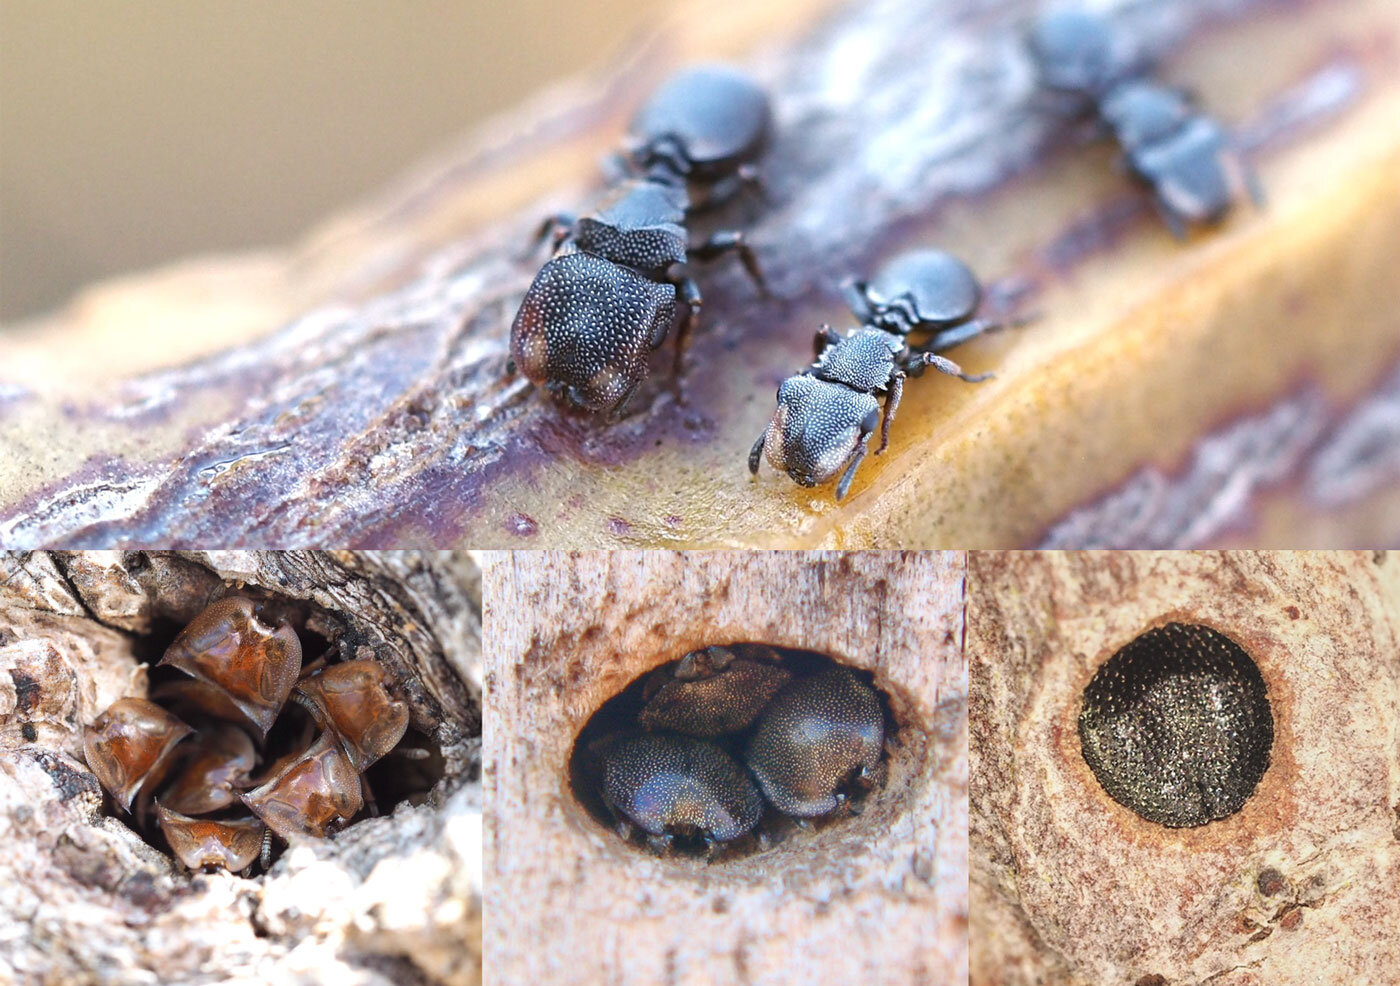 Las hormigas tortuga defienden de sus nidos adaptando la forma y tamaño de su cabeza a las dimensiones de la entrada. Foto: Universidad de Rockefeller.